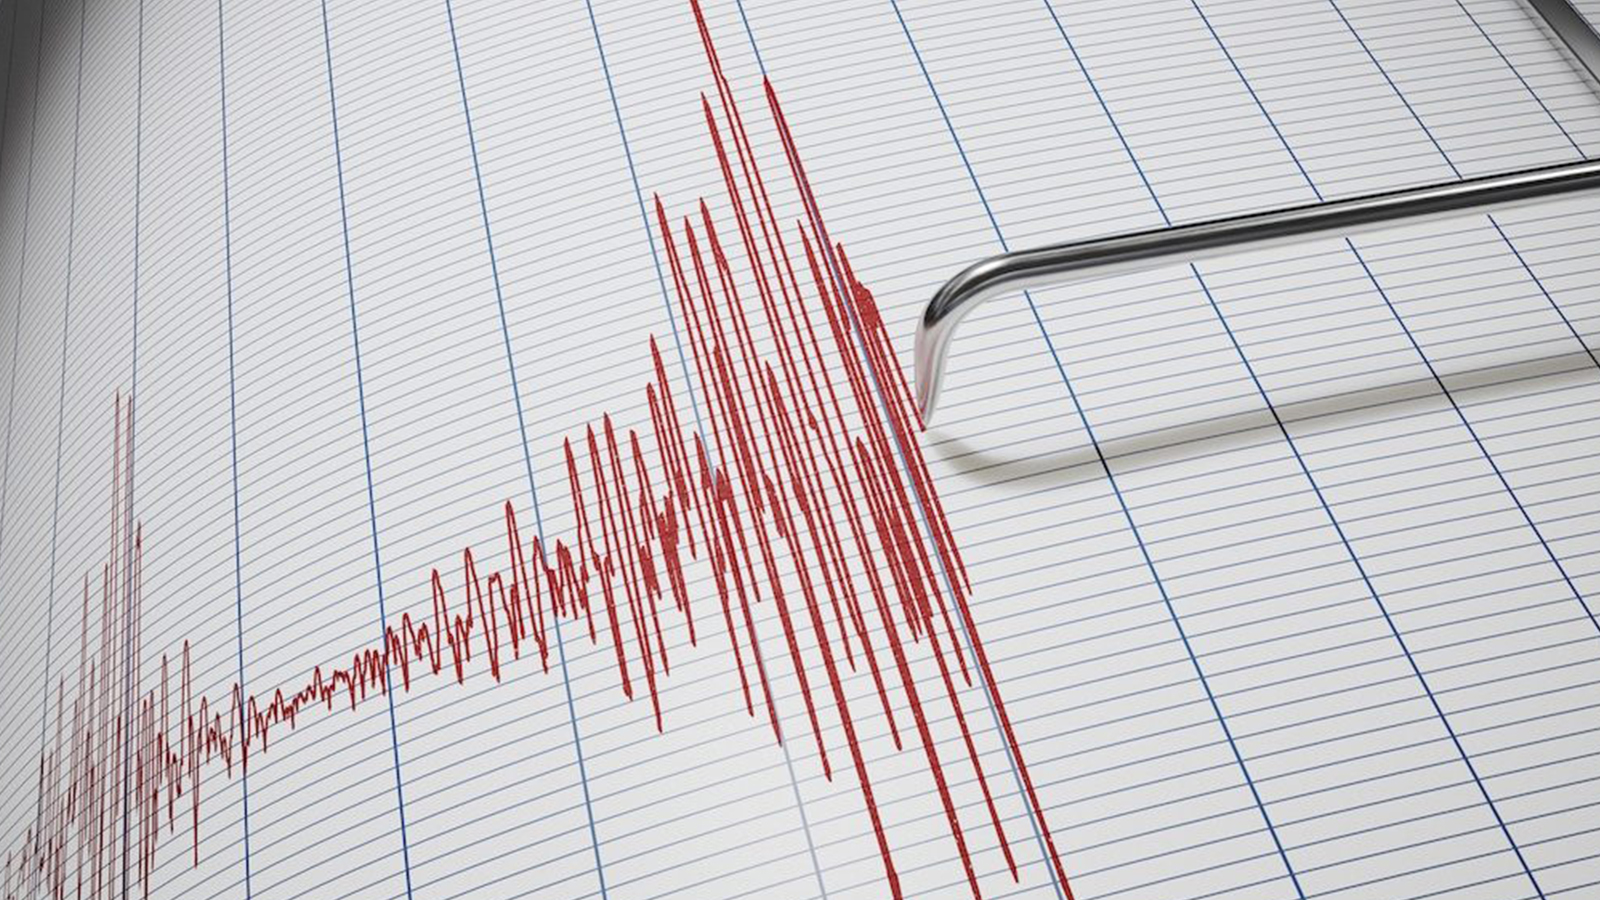 Deprem büyüklüğü deprem şiddeti nedir? Deprem büyüklüğü şiddeti arasındaki fark nedir?